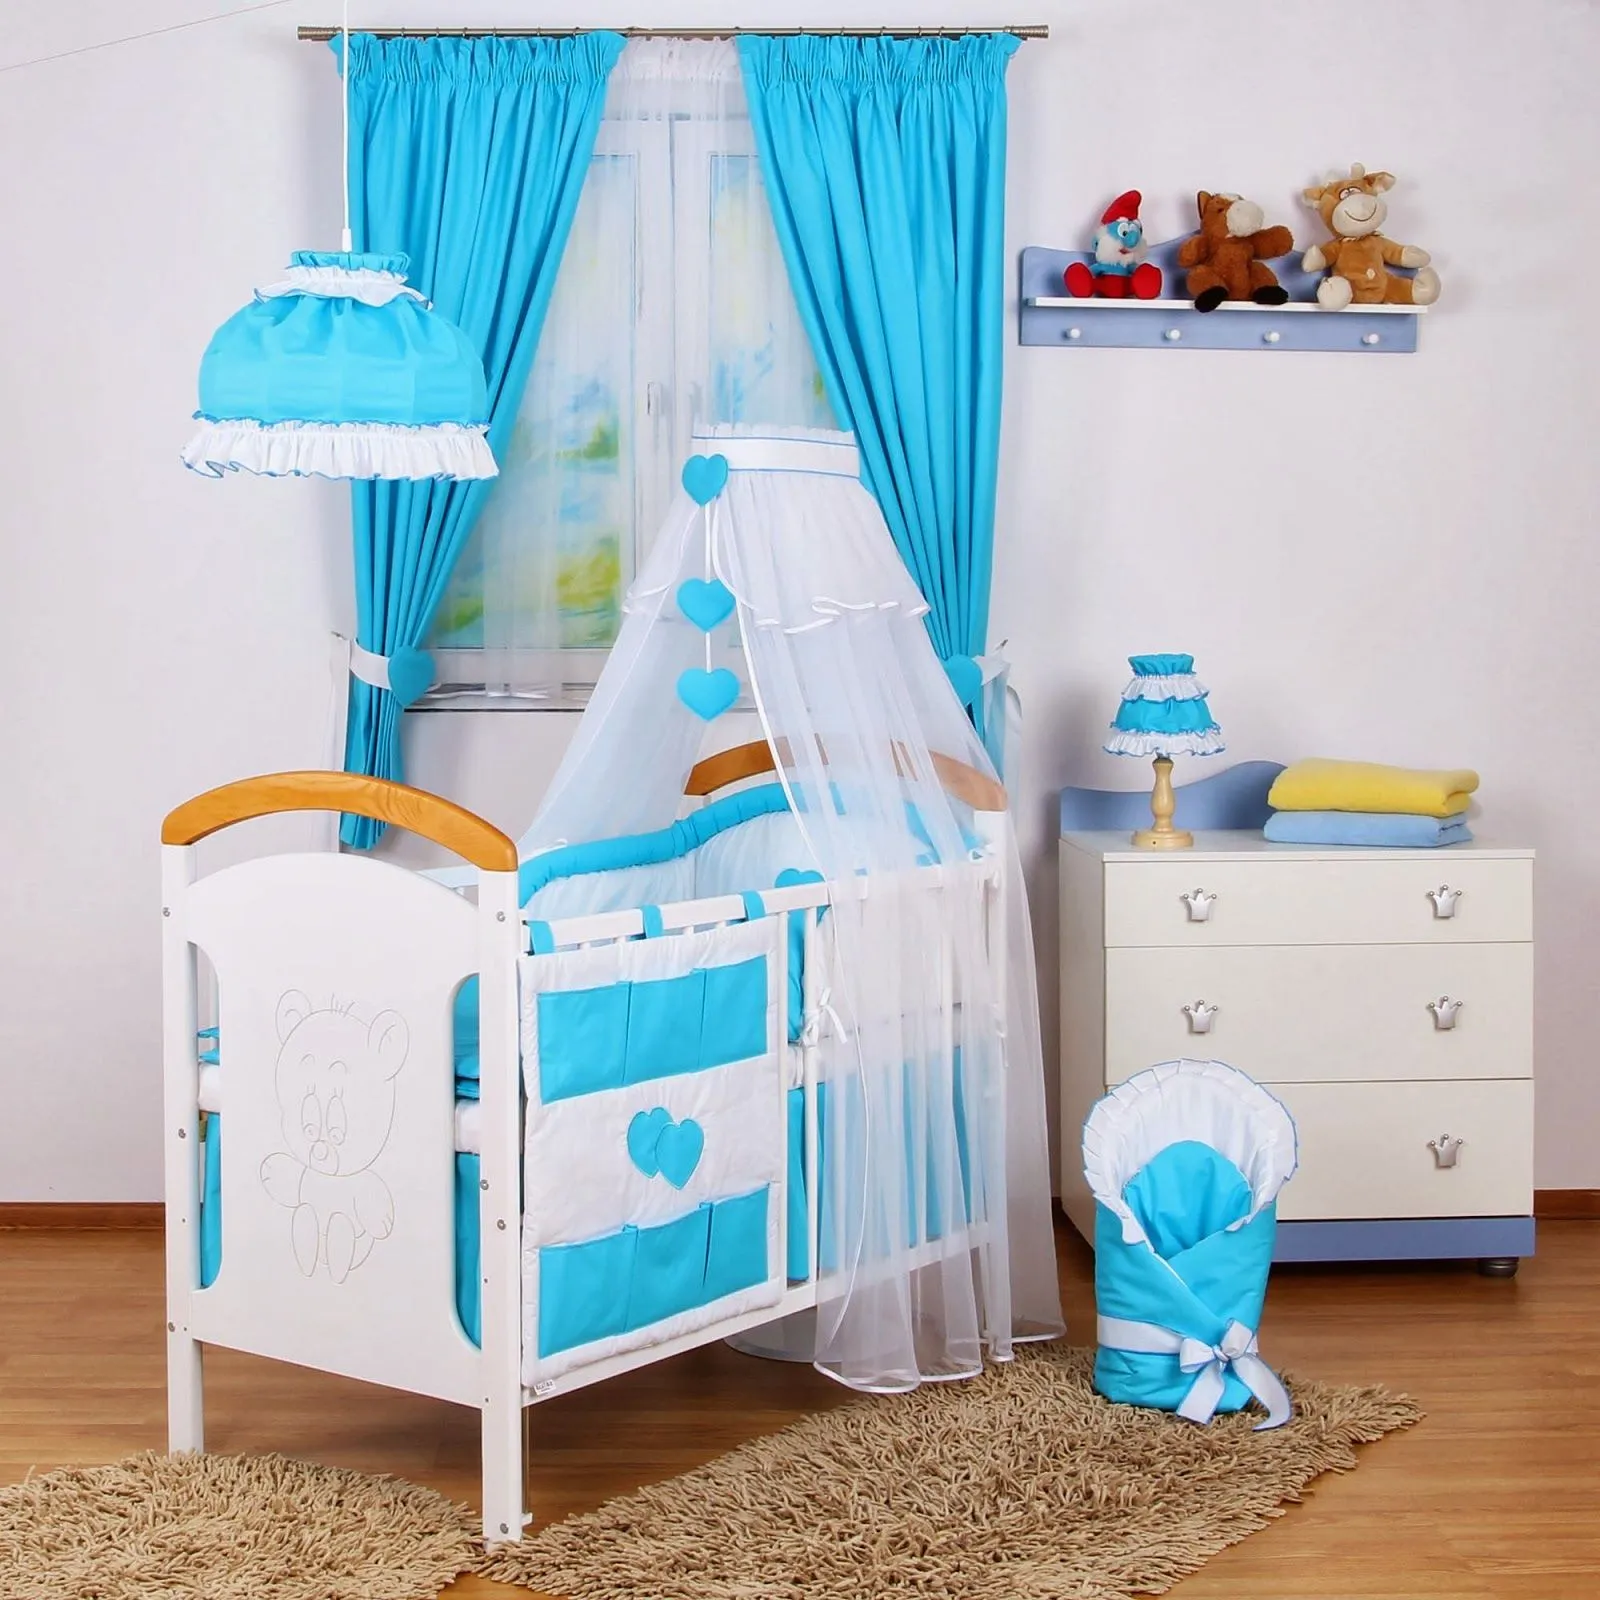 Dormitorios para bebé en blanco y turquesa - Dormitorios colores y ...